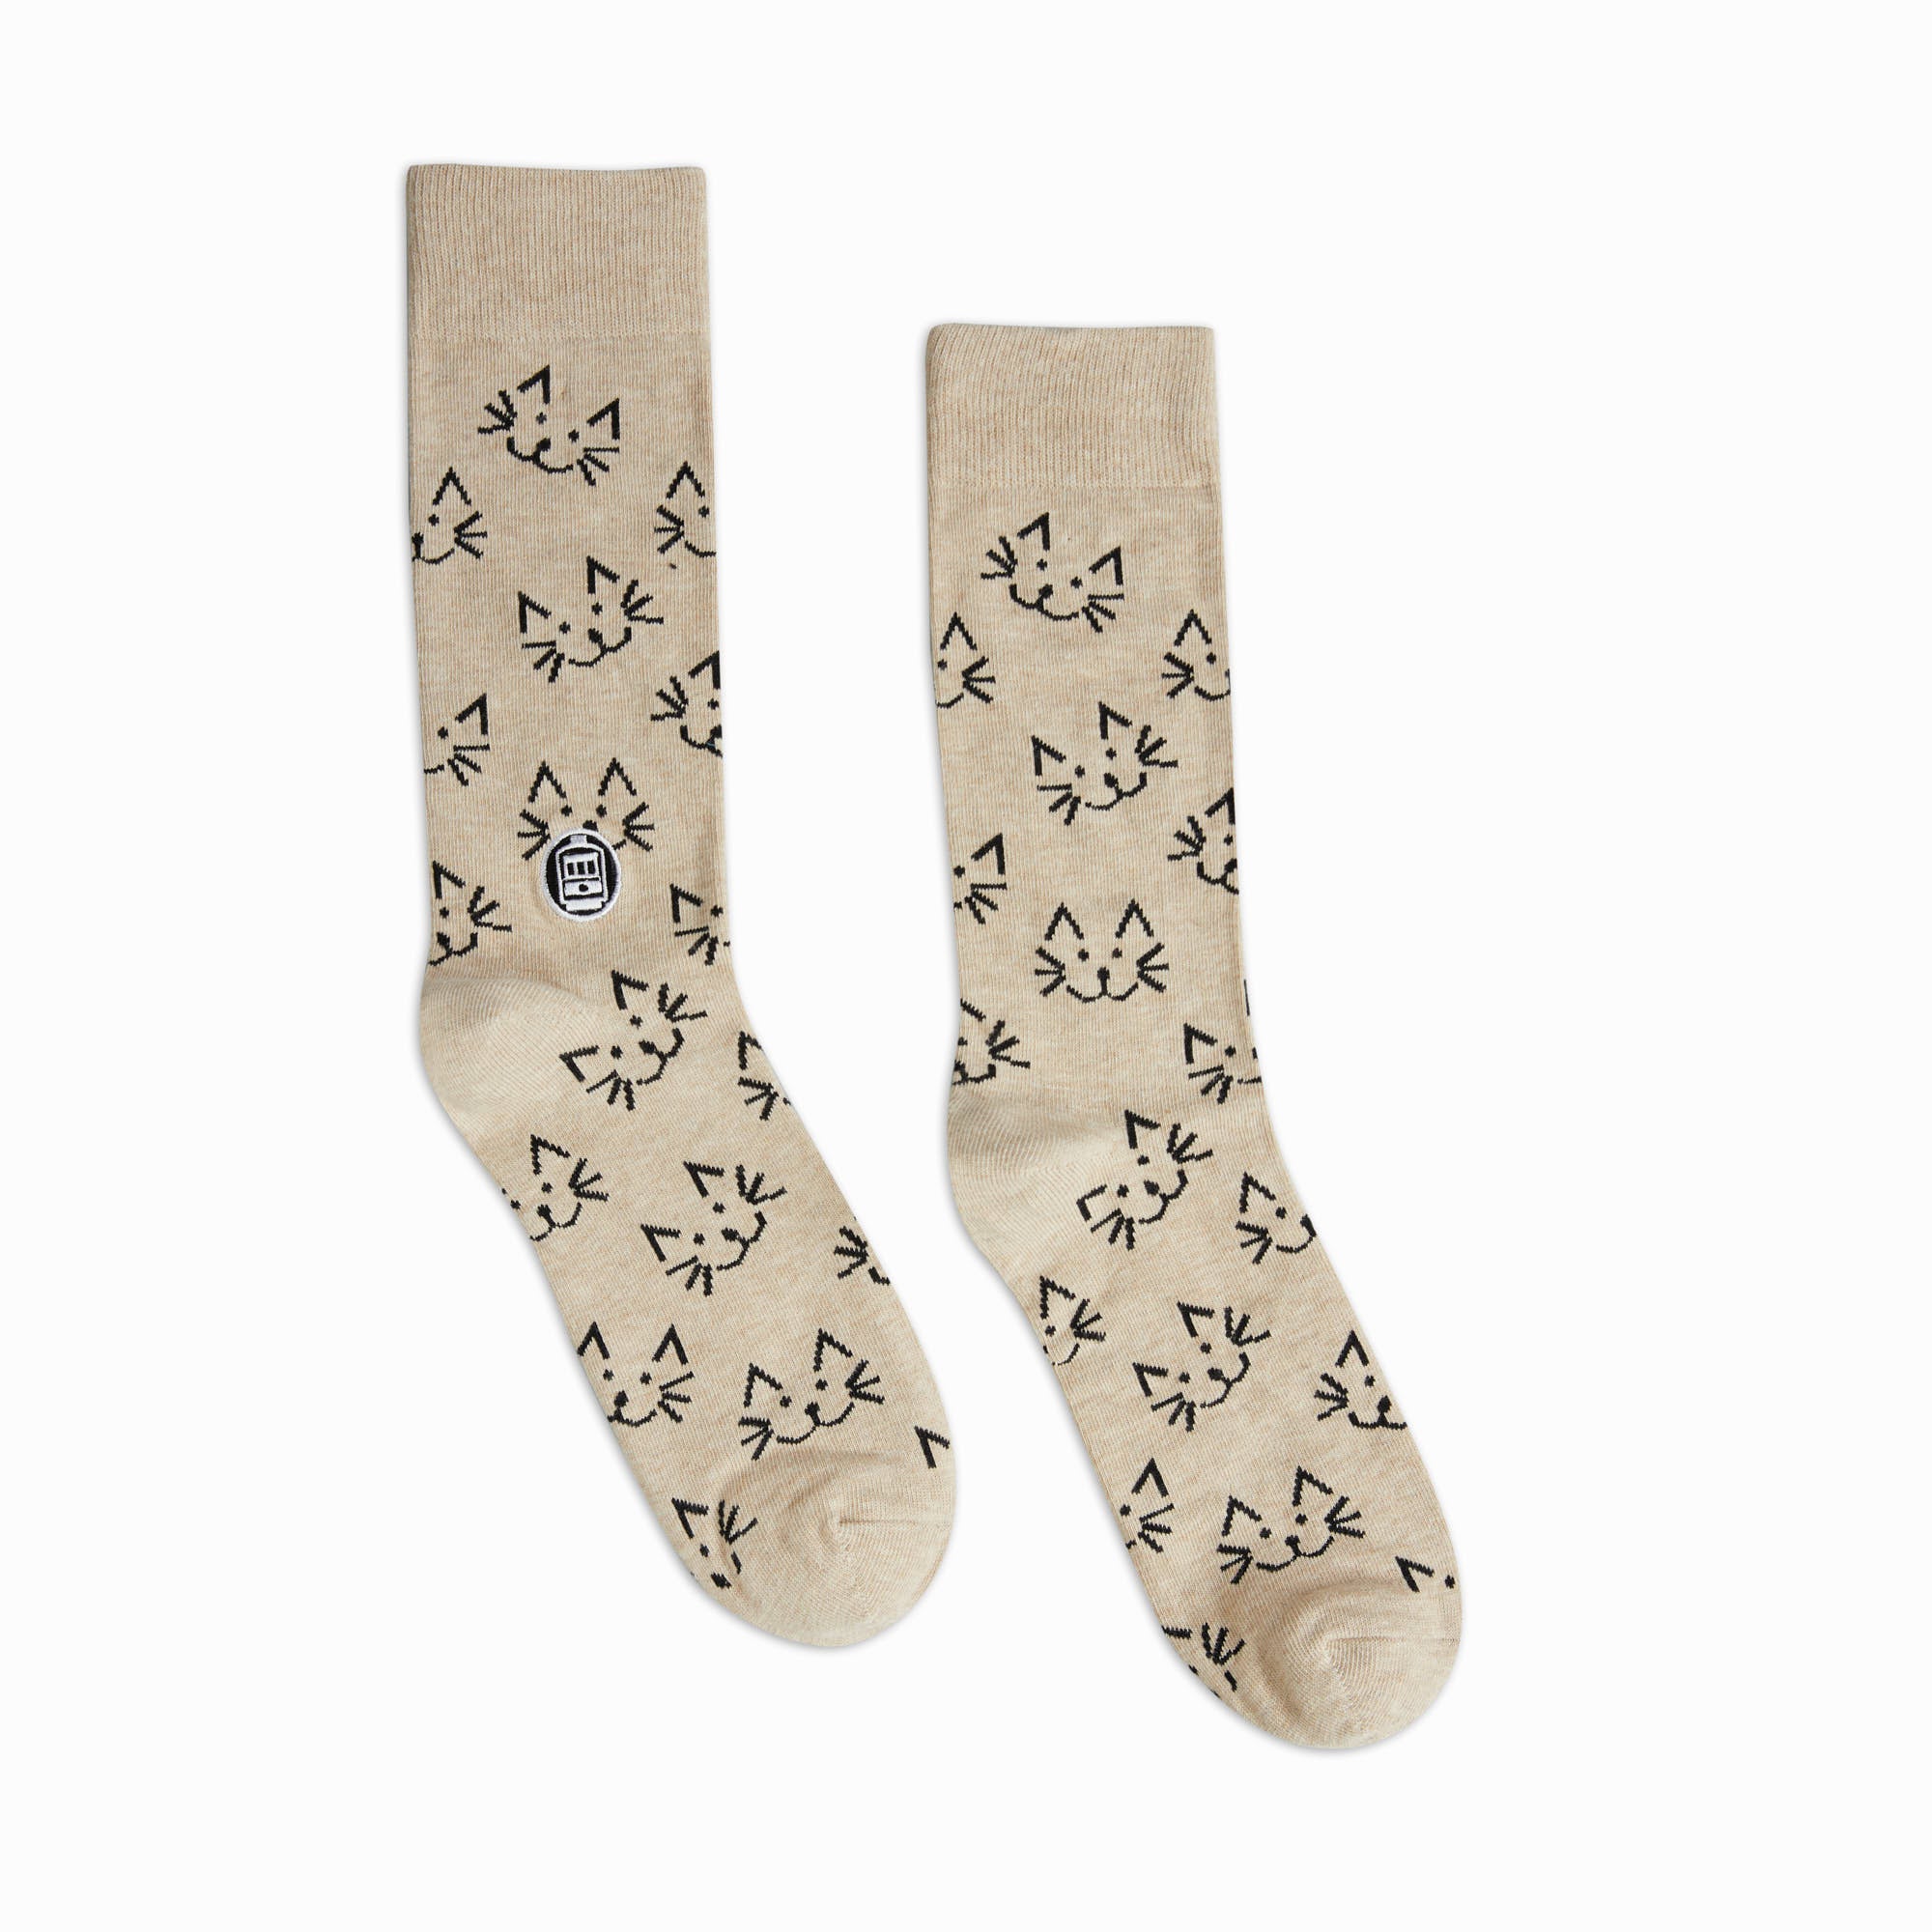 Bonfolk Cats Socks